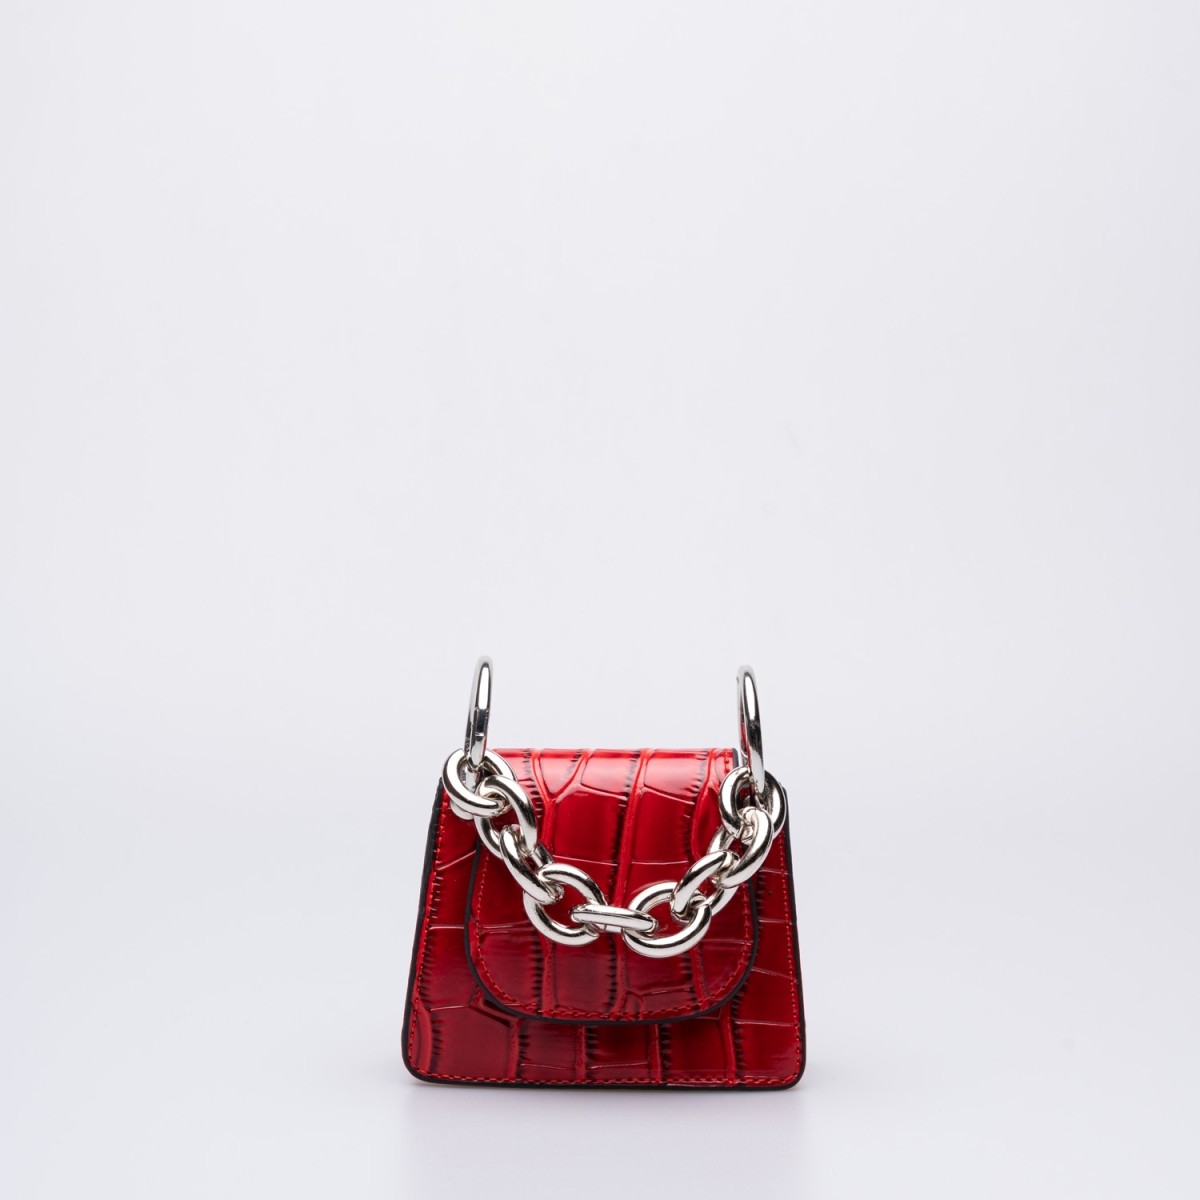 Valerie Baskı Desenli Gümüş Zincir Detaylı Mini Cüzdan Çanta Kırmızı